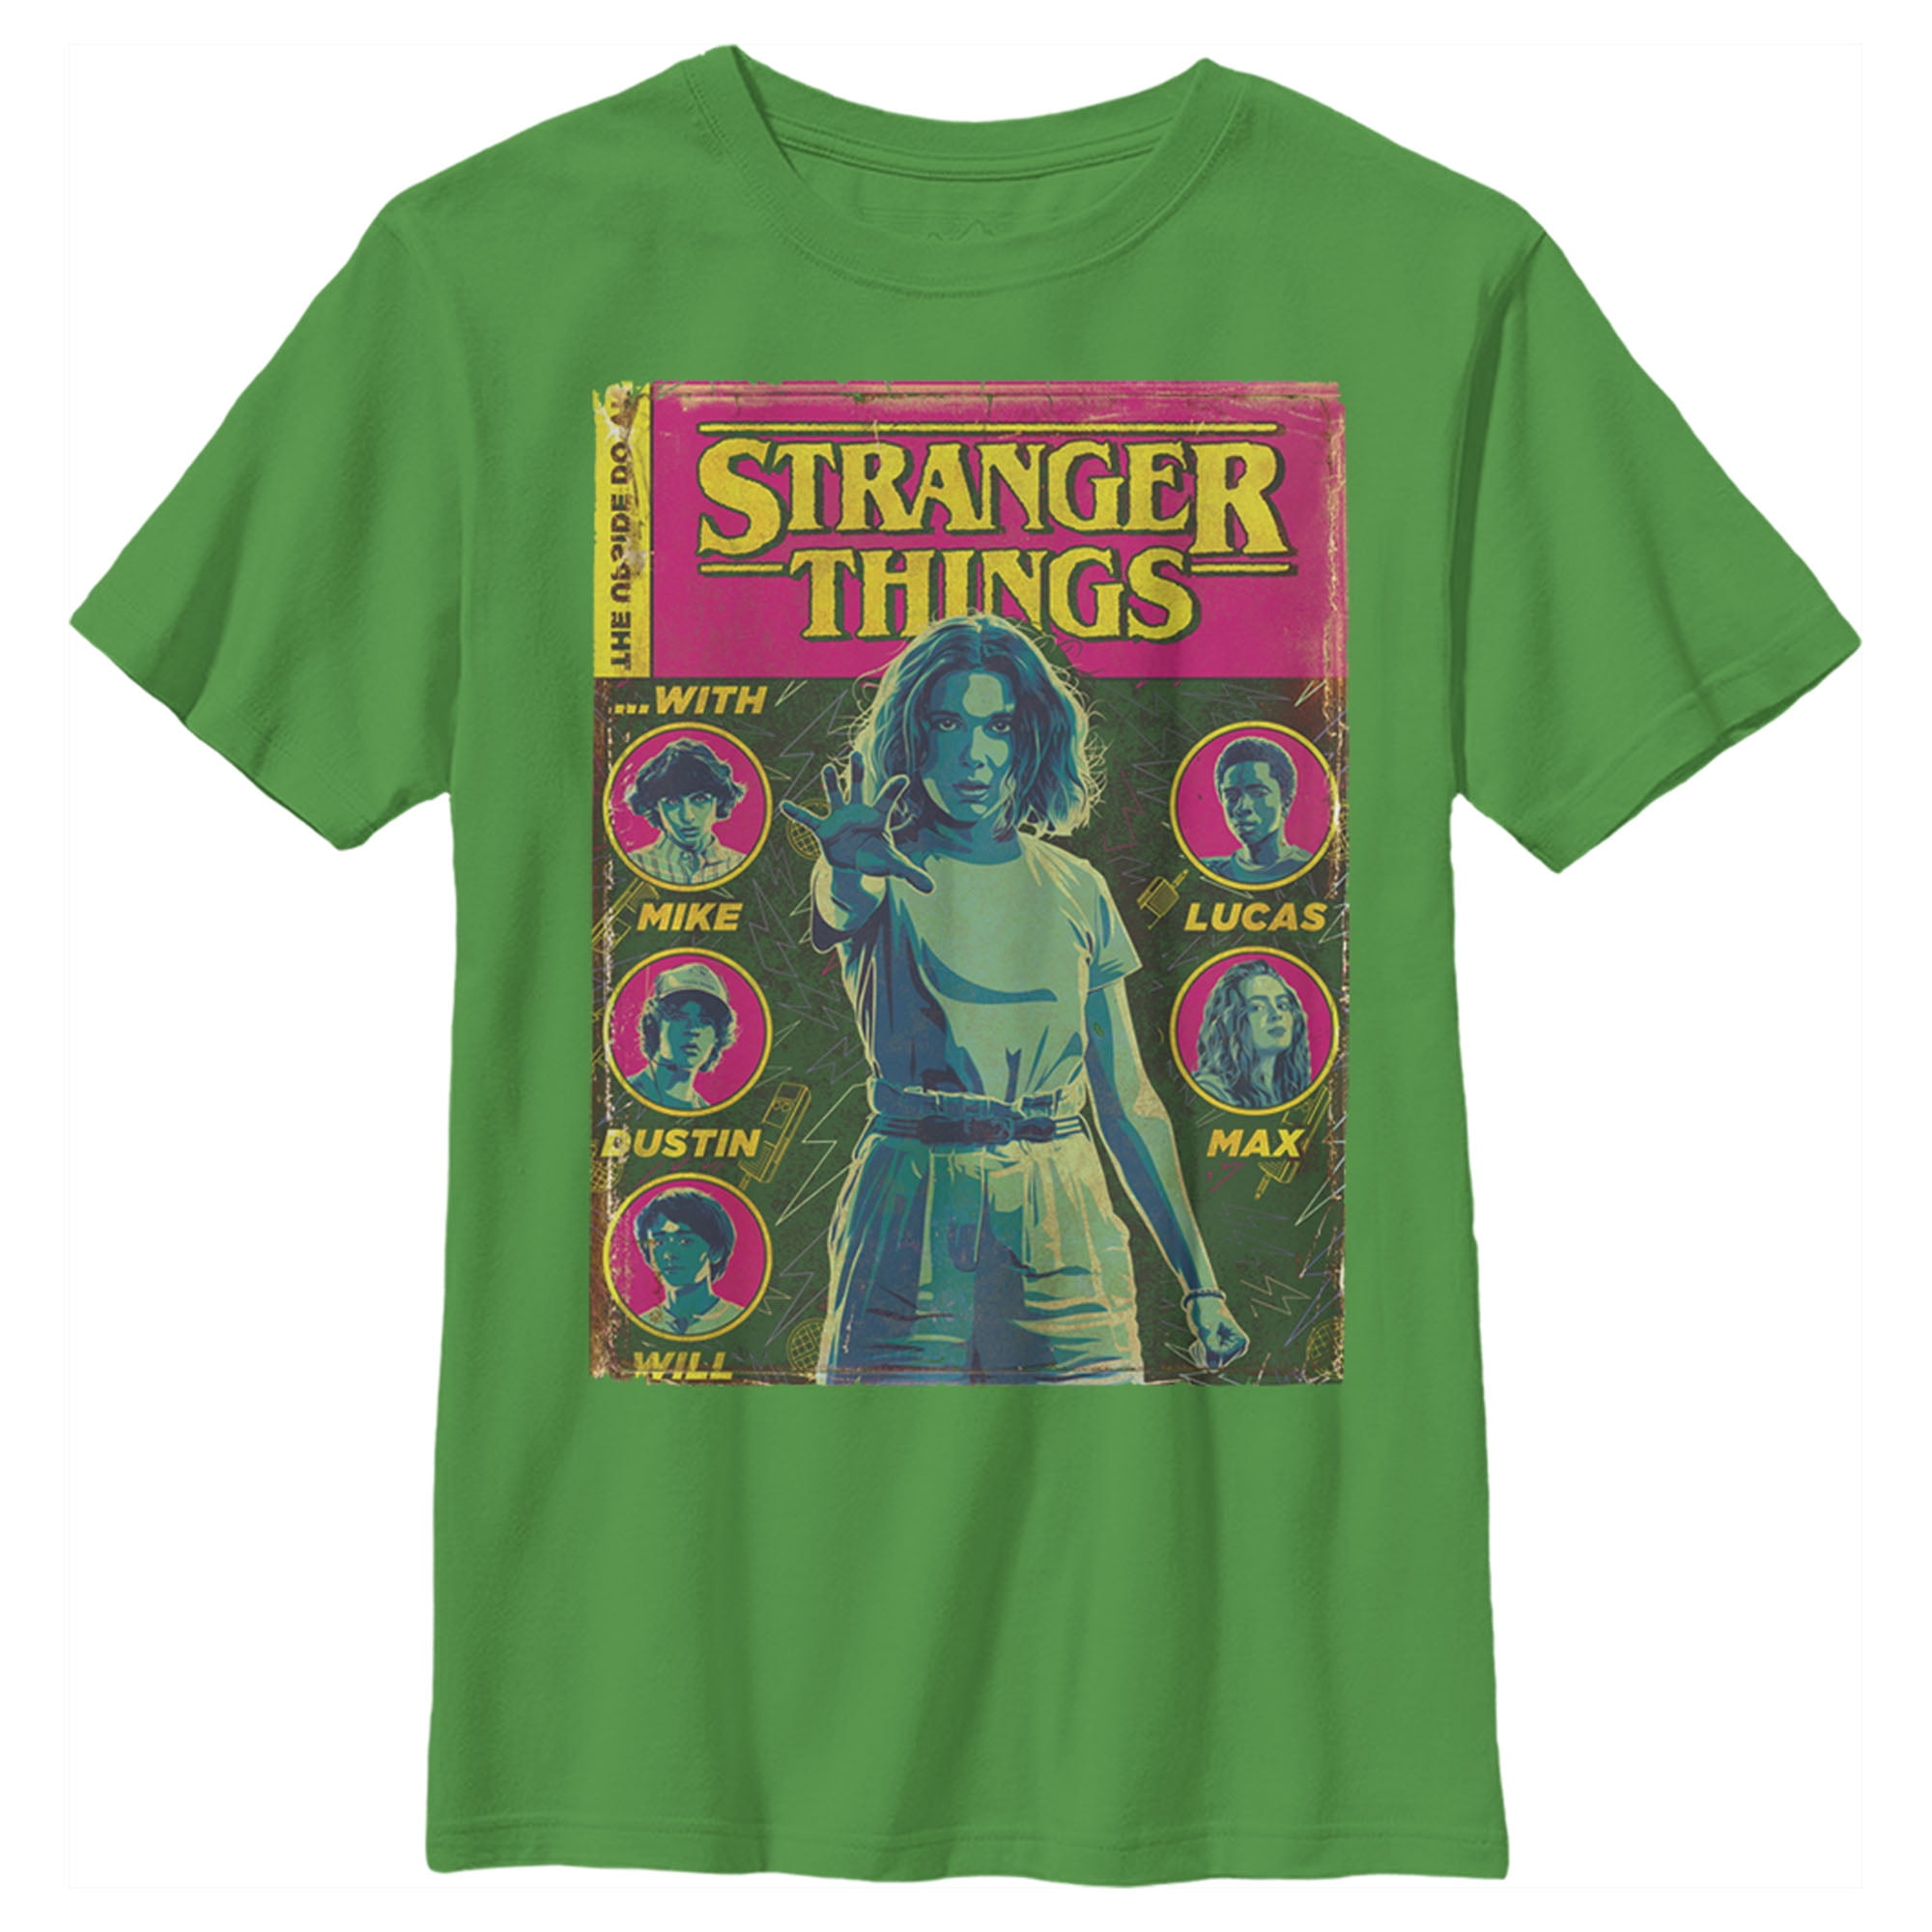 Stranger Things - Stranger Things Boys' Vintage Comic Book Cover T ...